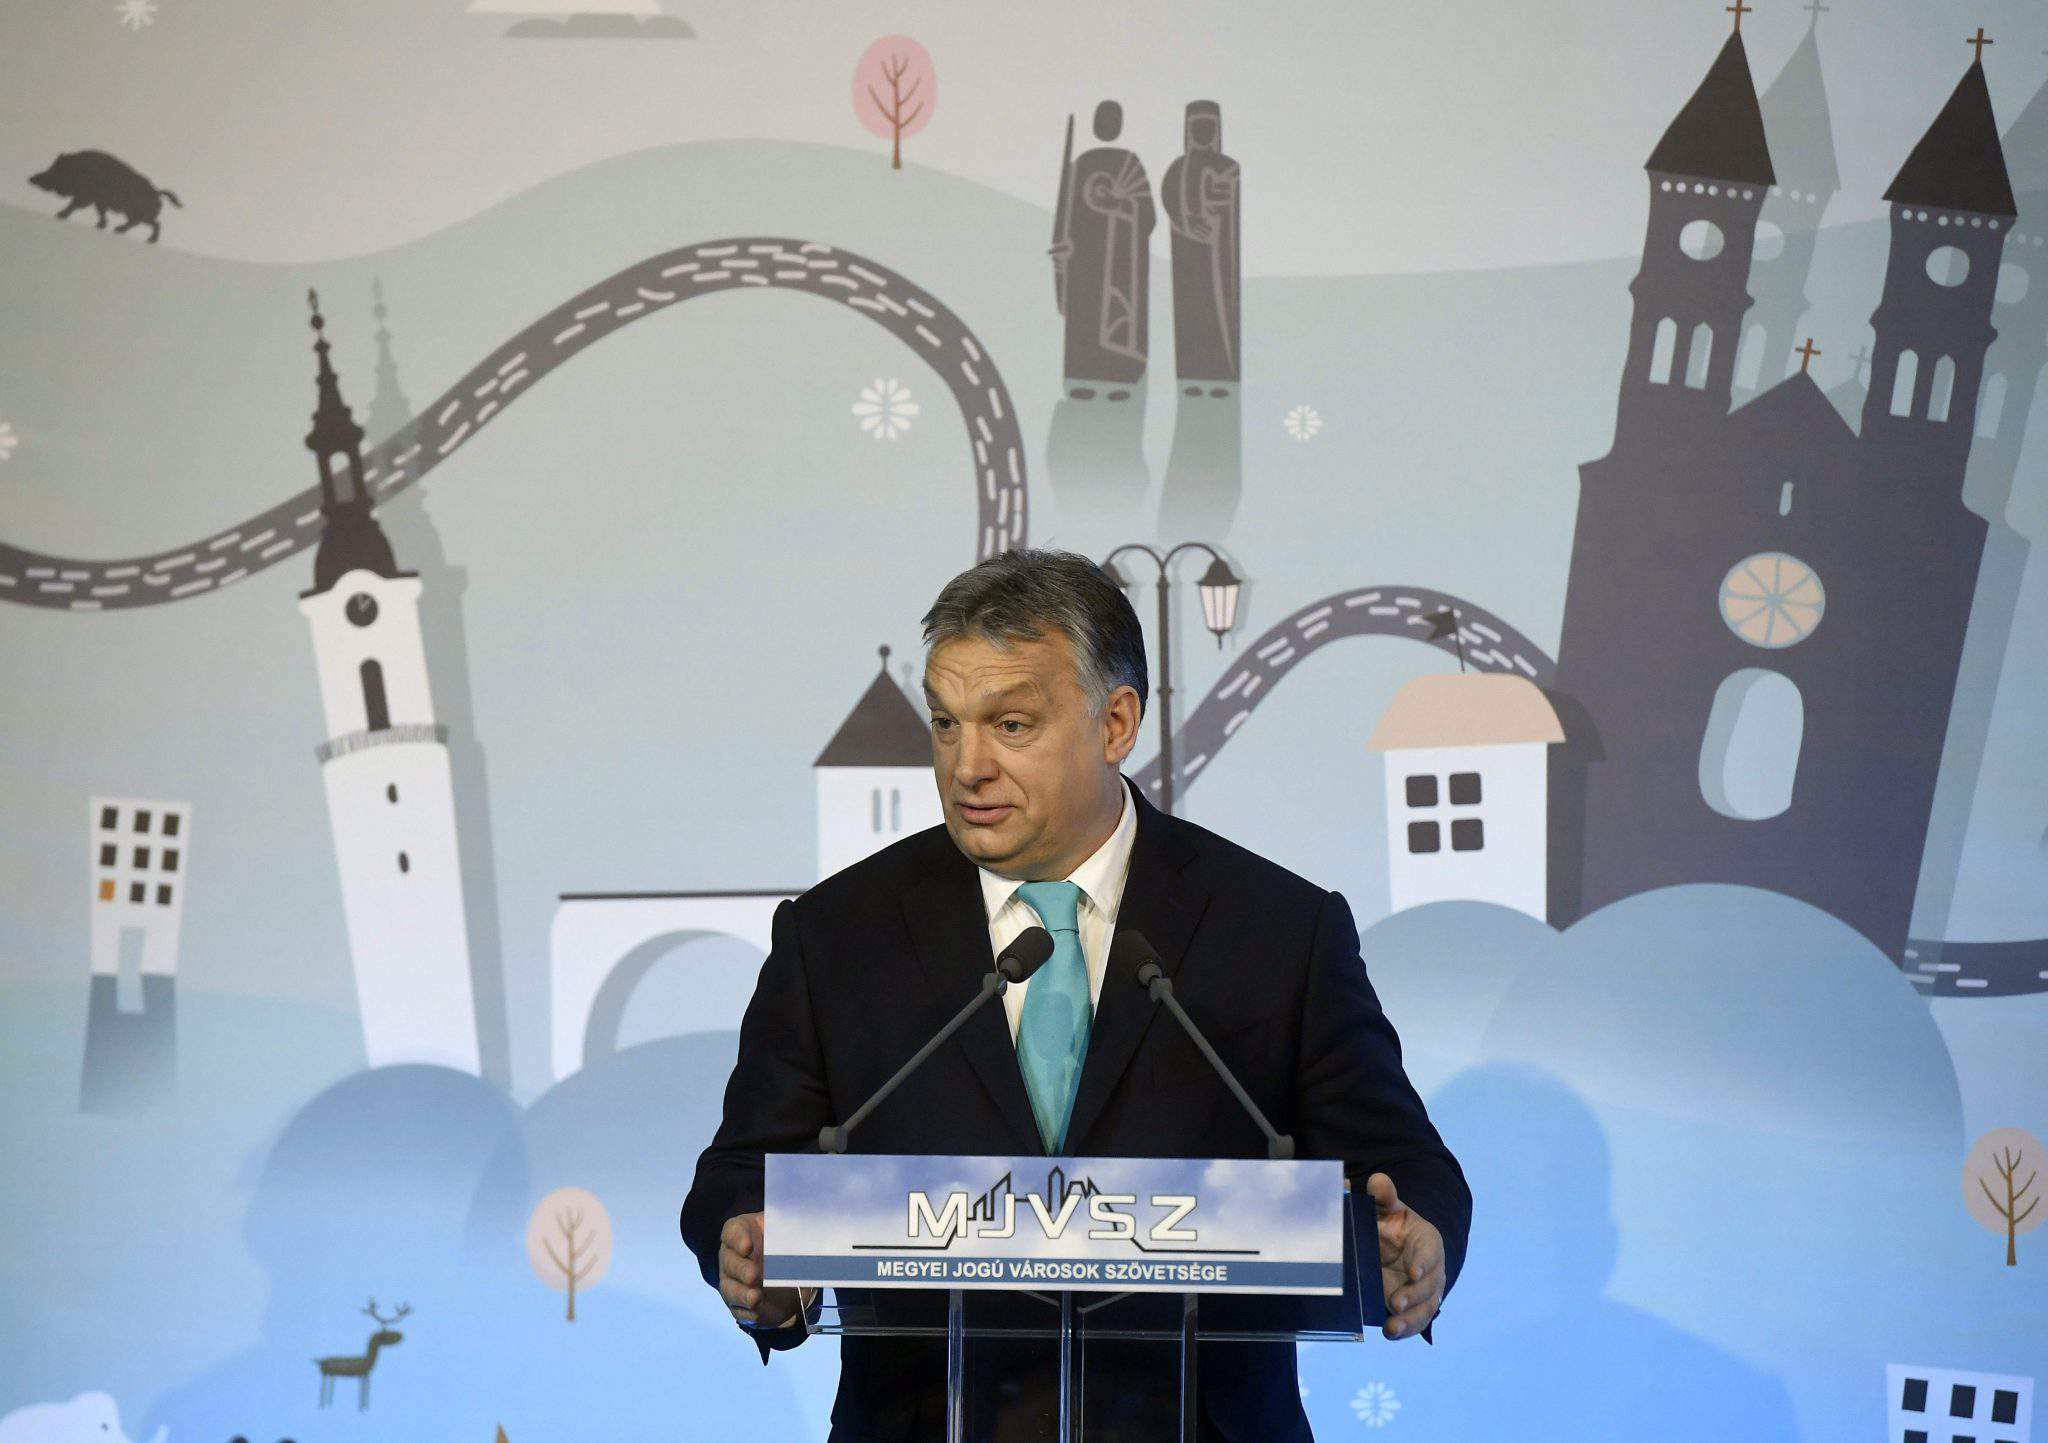 viktor orbán hablar Veszprém primer ministro